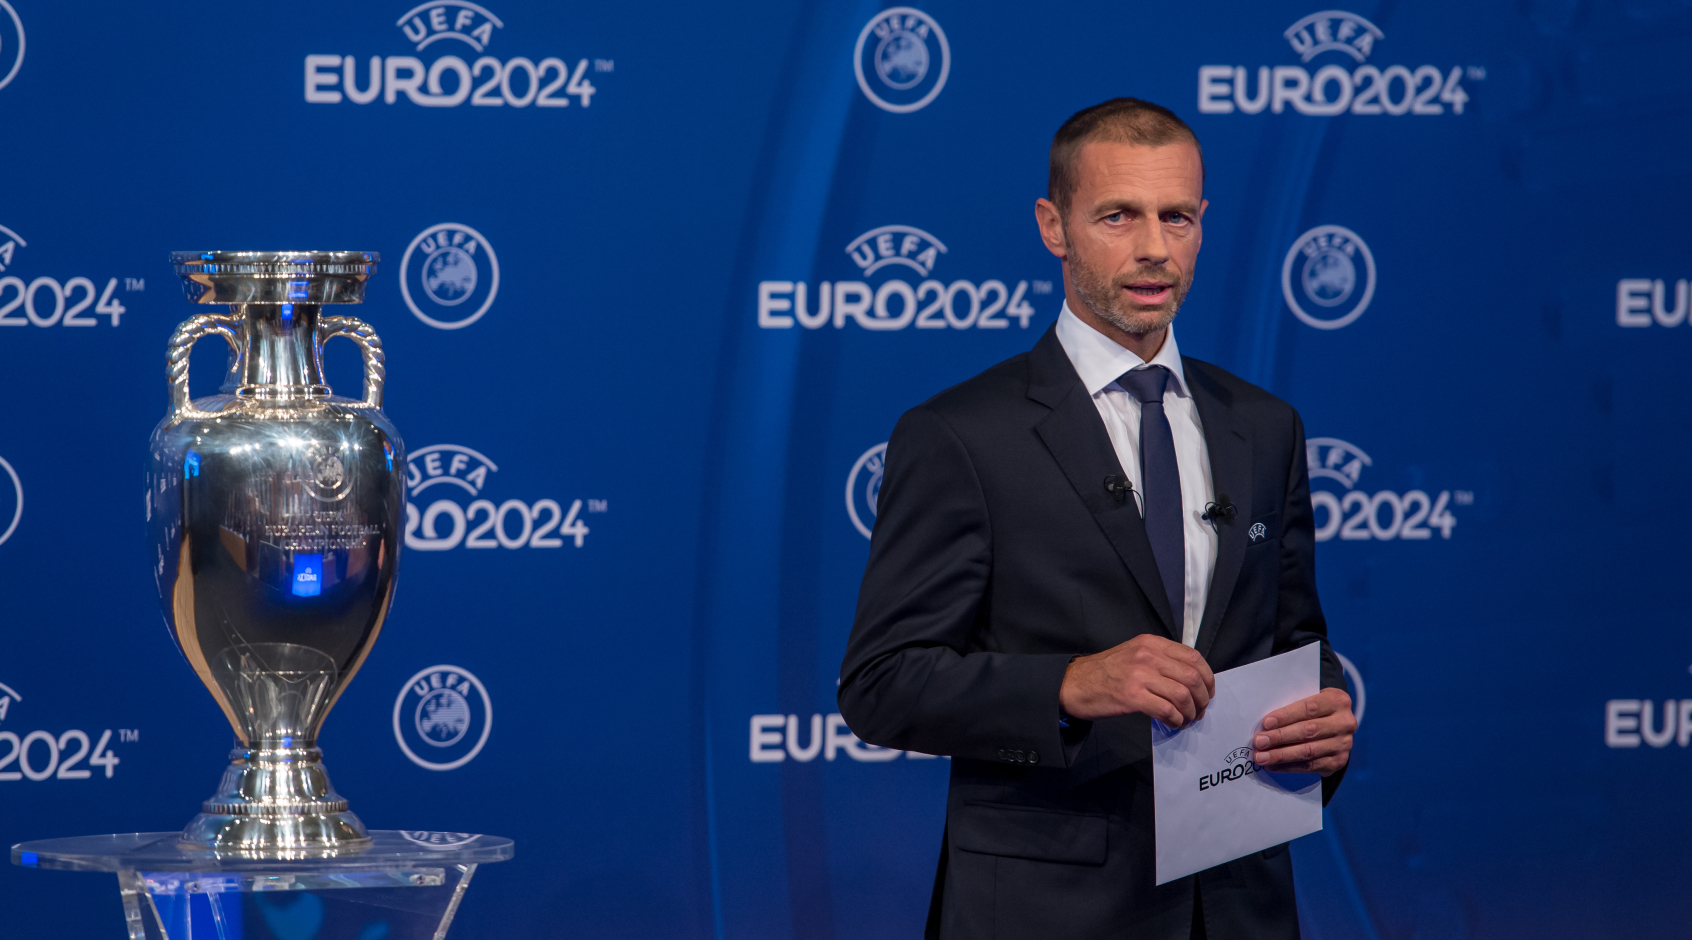 Дополнительные матчи сборных в марте и сентябре 2021 года, а также другие решения УЕФА